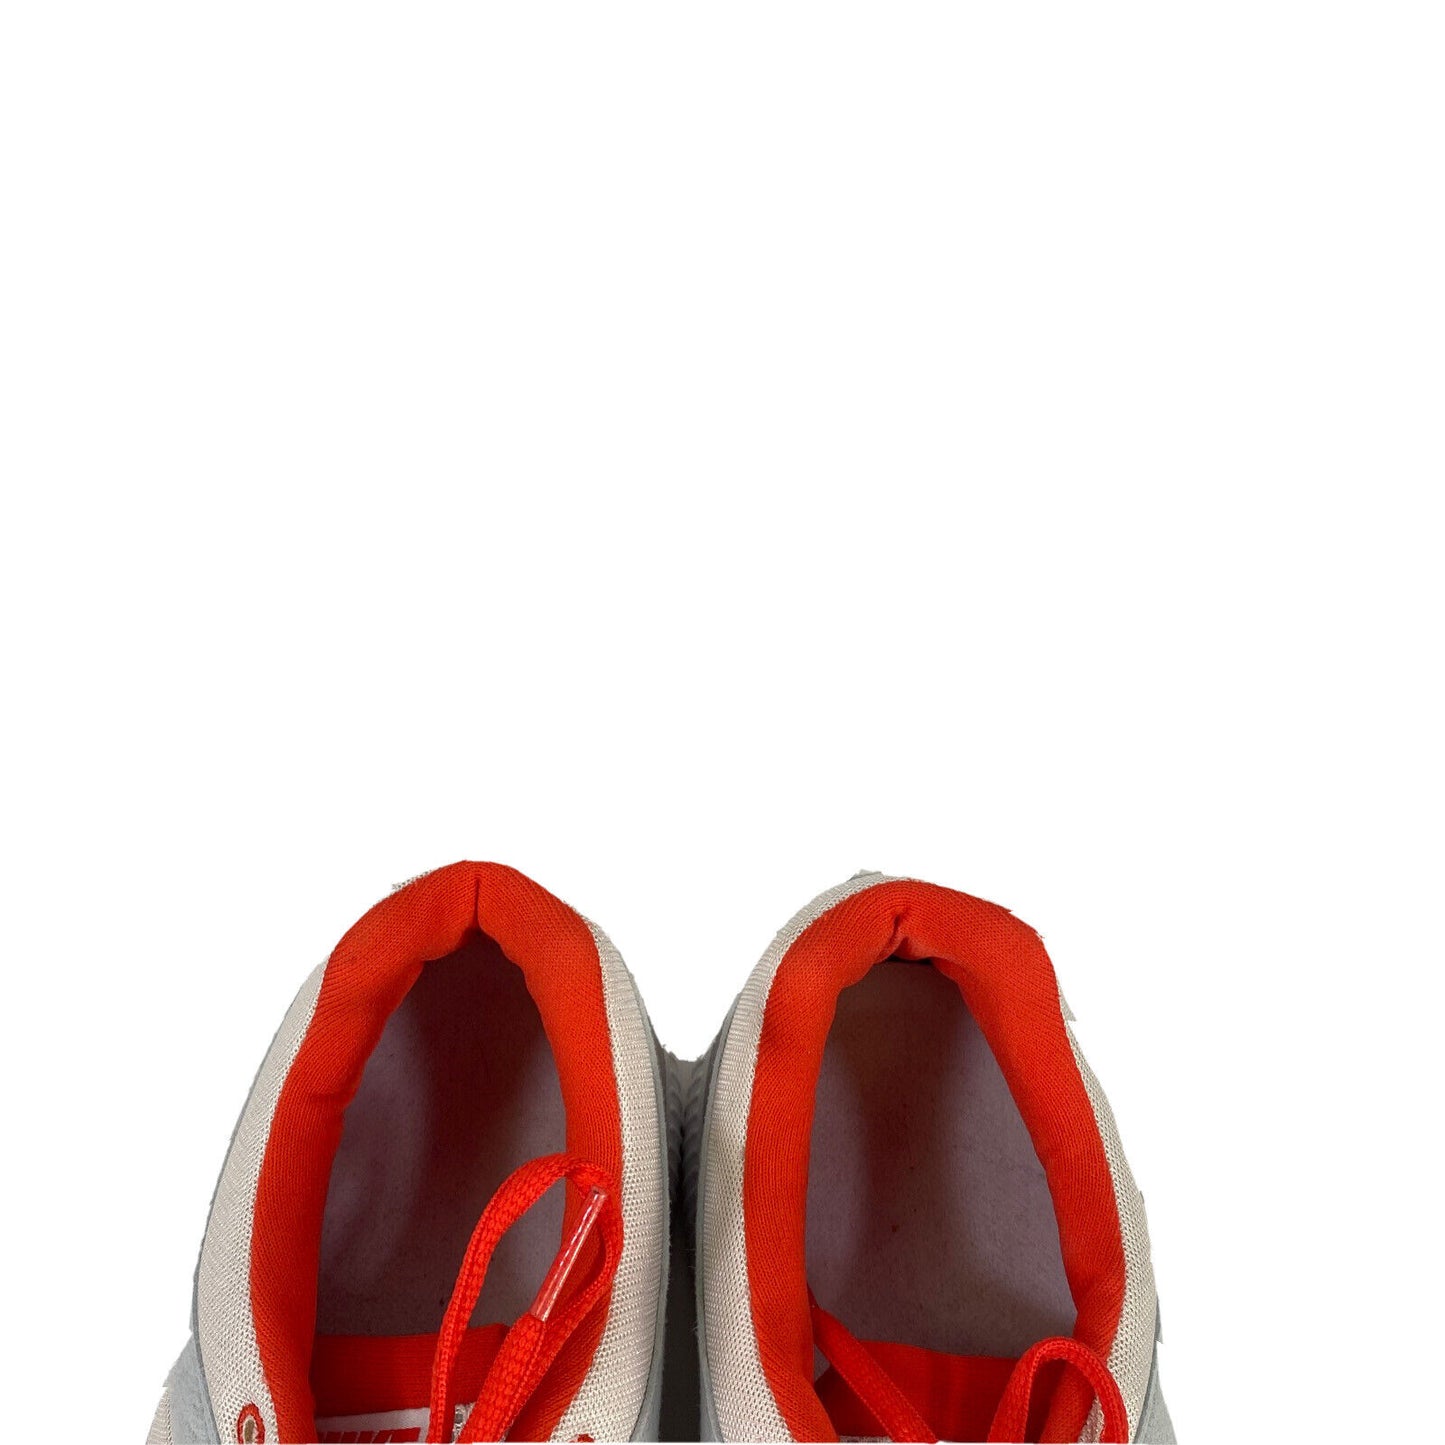 Zapatillas Nike Free Everyday con cordones para mujer, color blanco/naranja, 9,5